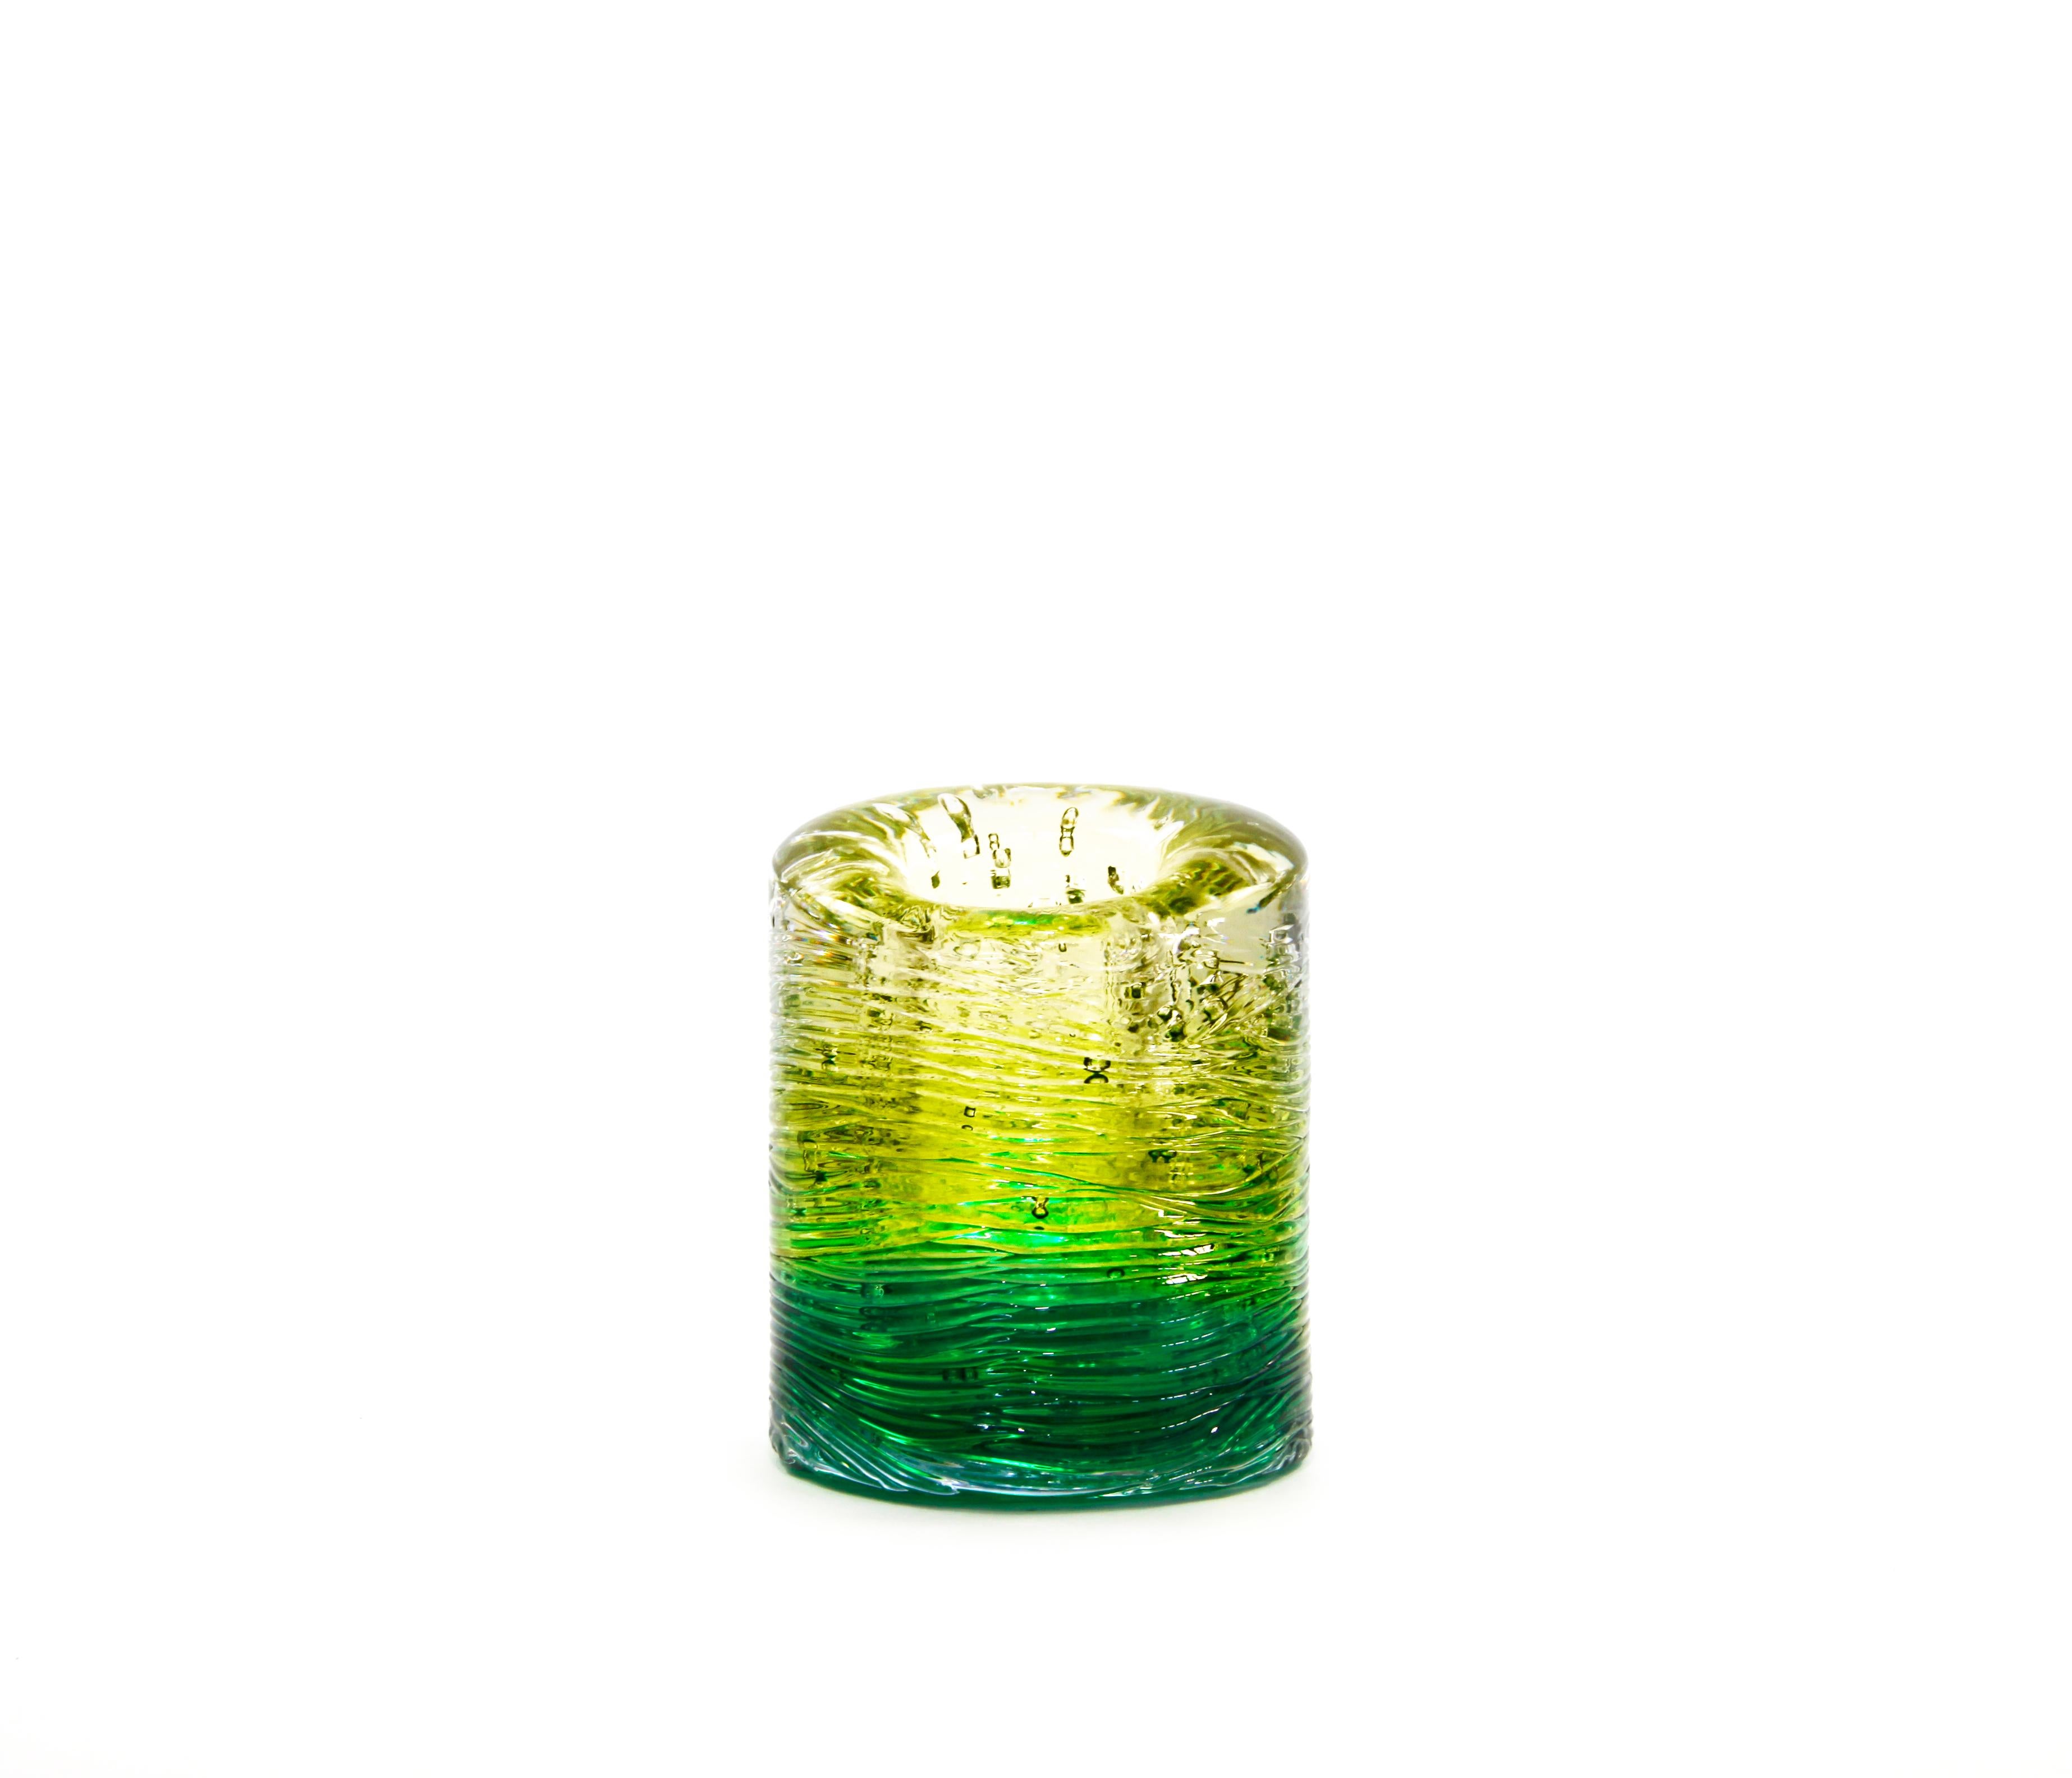 Jungle Contemporary Vase, Small Version in Monochrome Gold by Jacopo Foggini For Sale 5